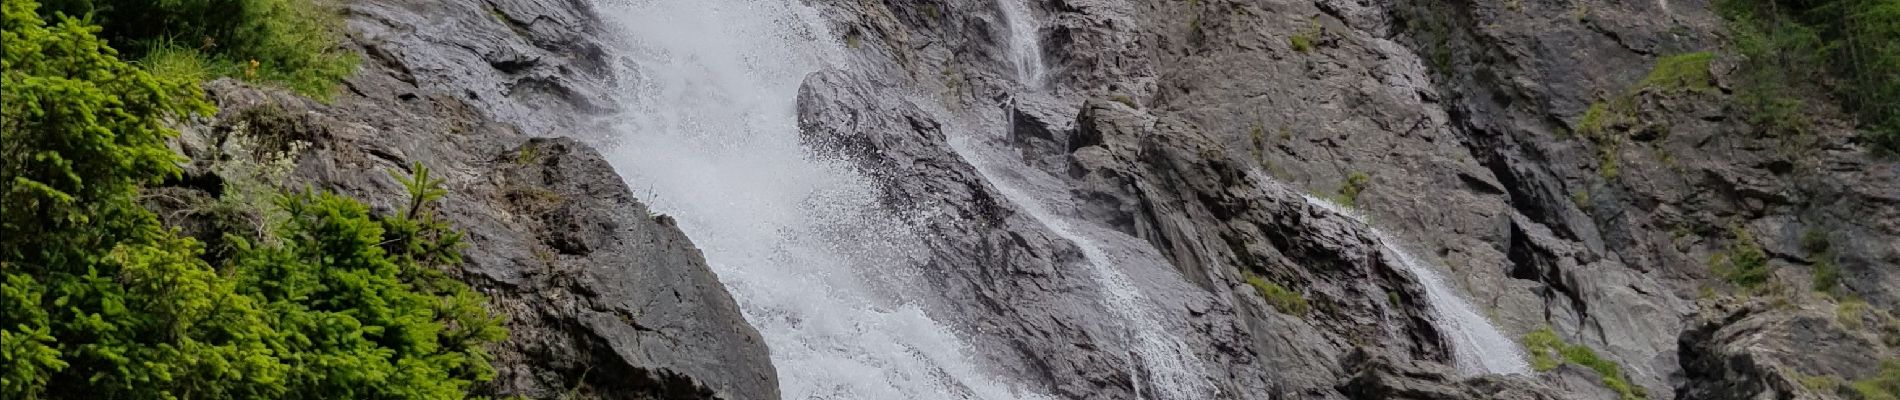 Randonnée Marche Sainte-Foy-Tarentaise - La cascade de la Raie depuis la Bataillette  - Photo